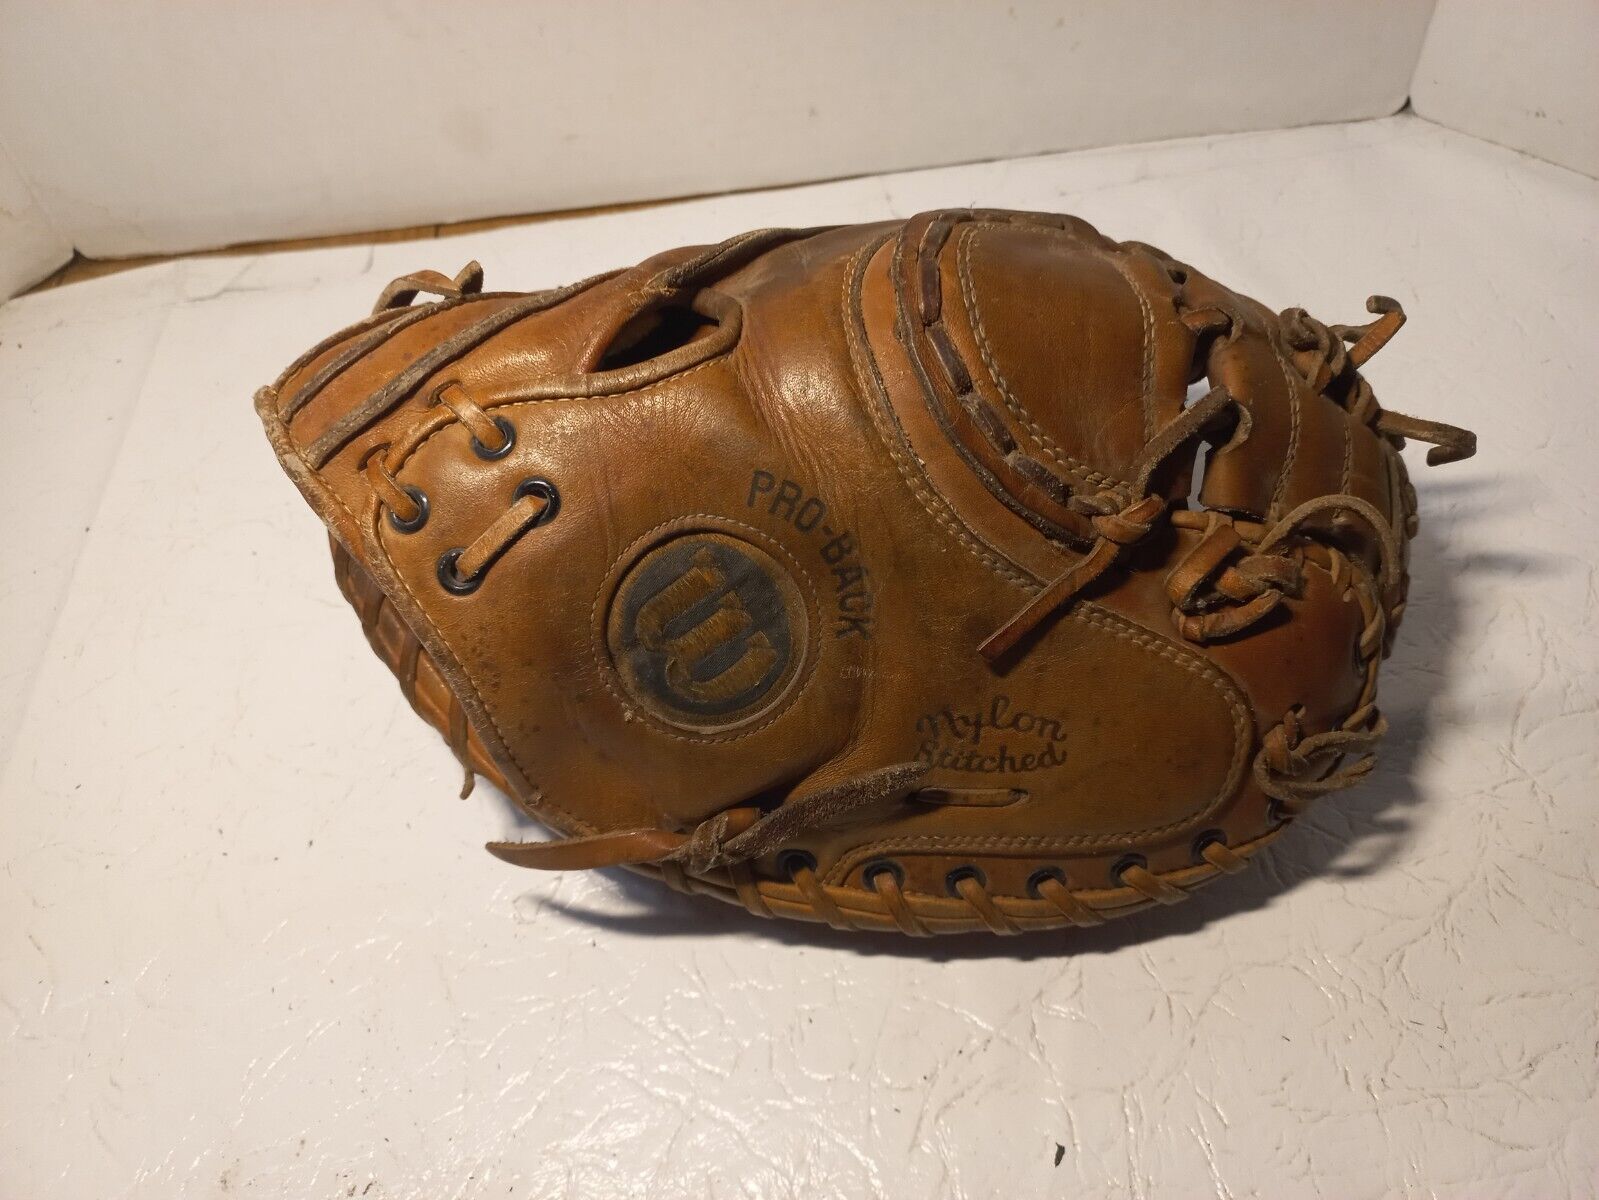 WILSON Pro A2403 A2000  Professional Adult Catchers Baseball glove mitt USA